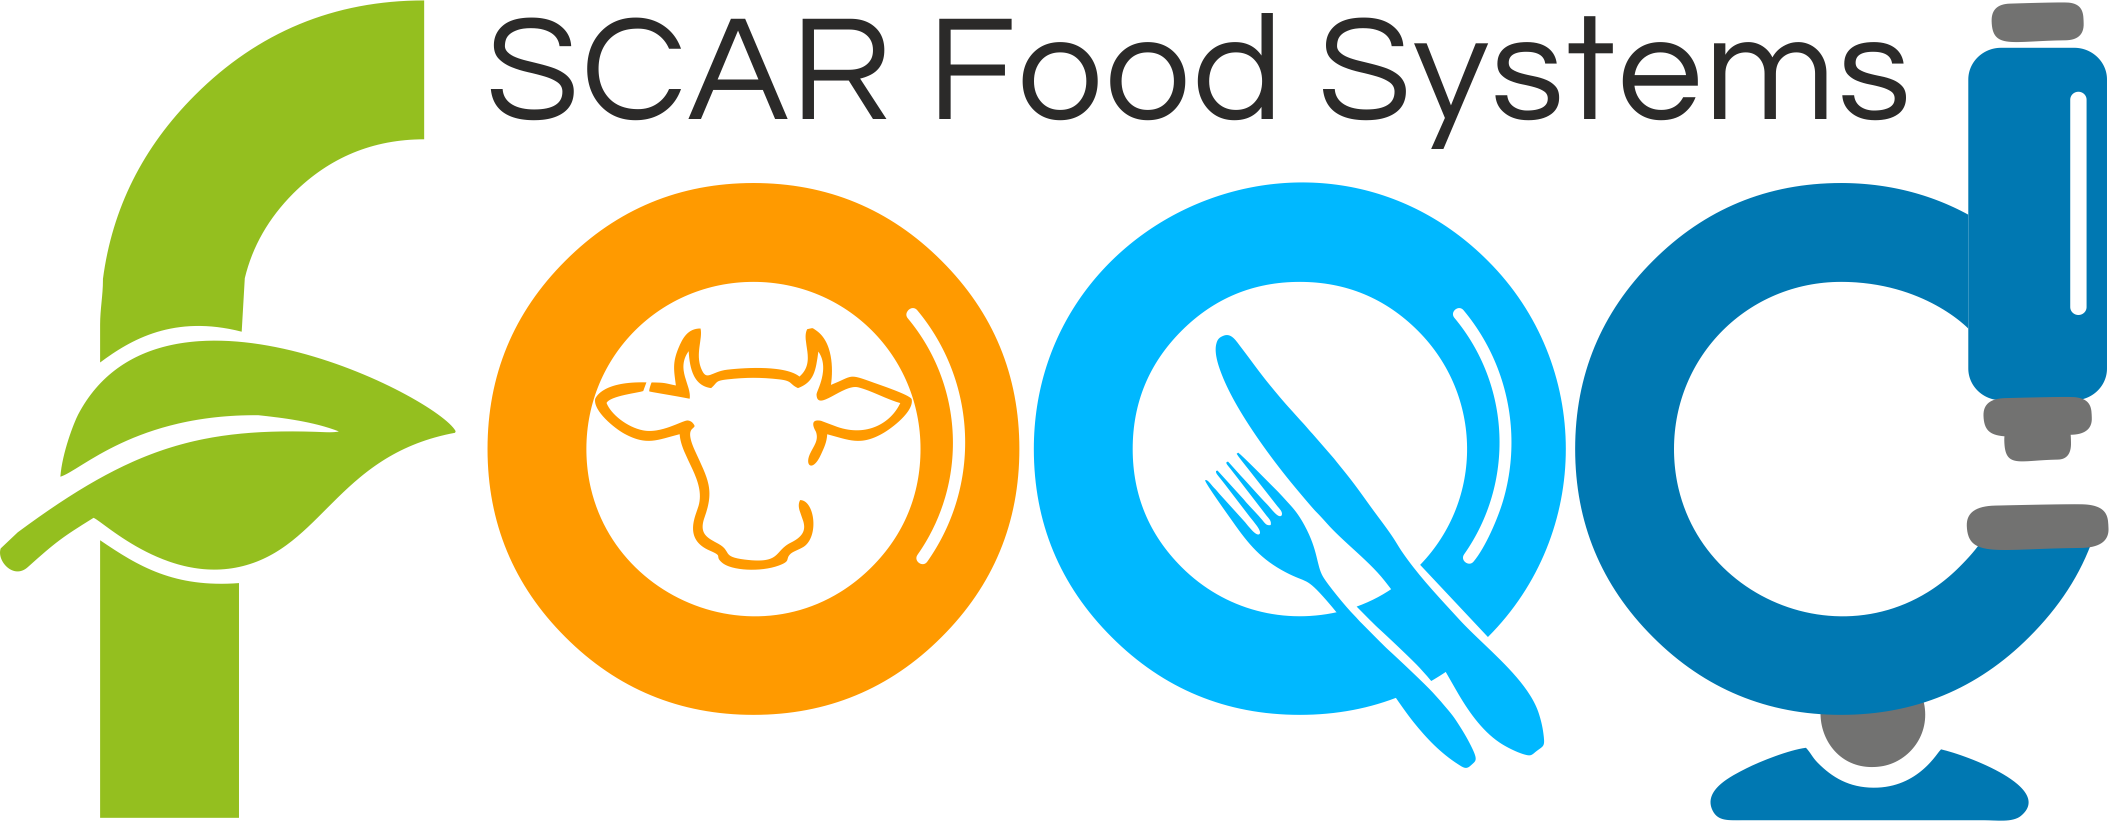 SCAR Food Systems logo